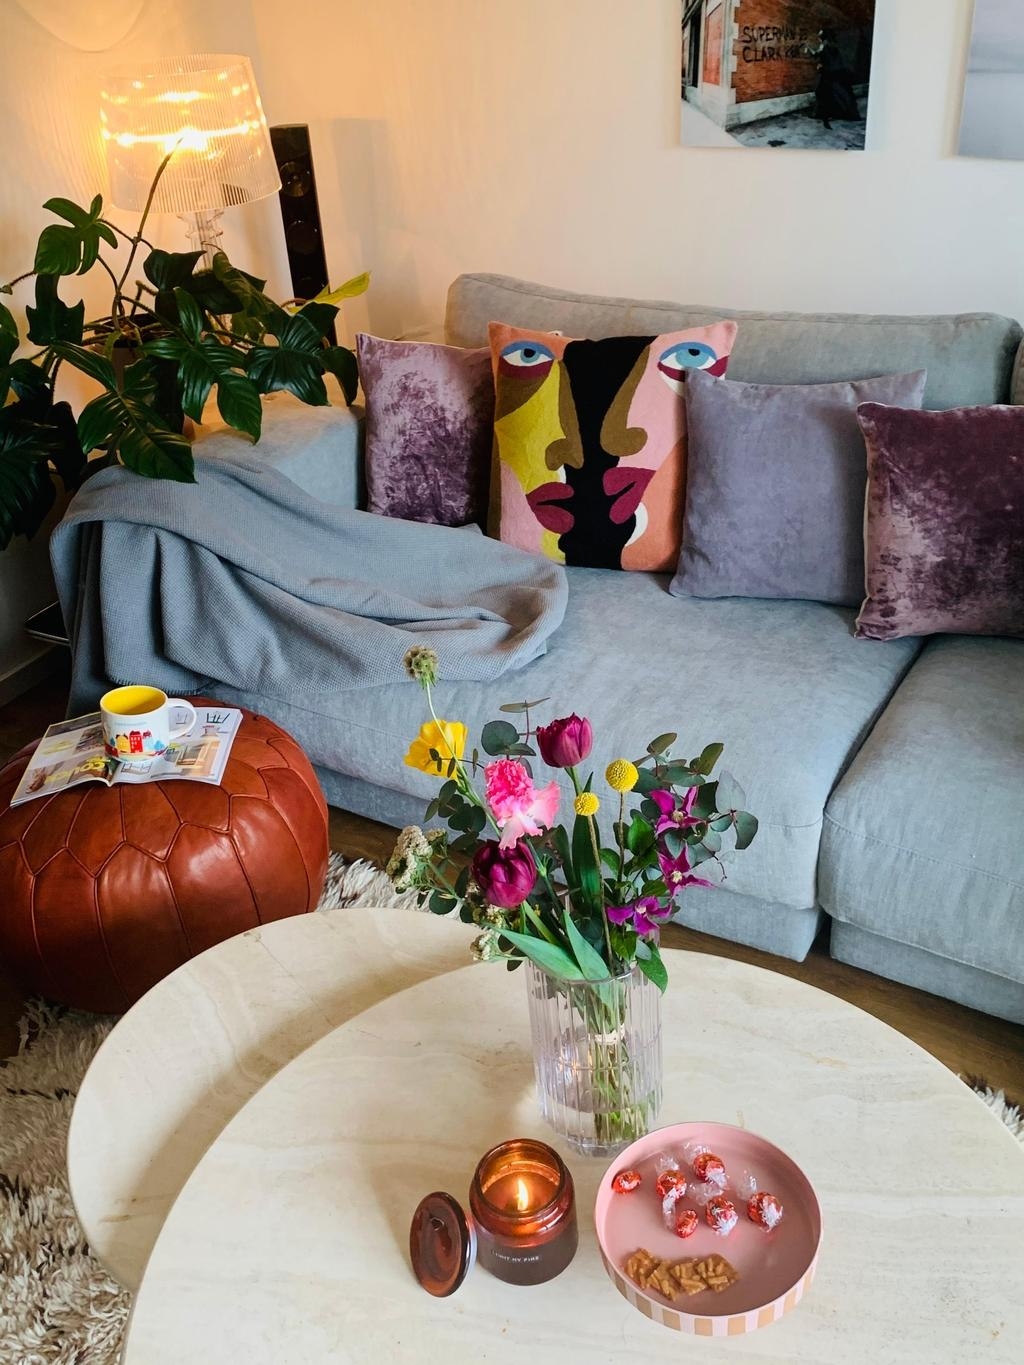 #detailverliebt #couch #kissen #pillows #coffeetime hygge # plantlover #flowerlover #candle
Instagram: @kim.terior